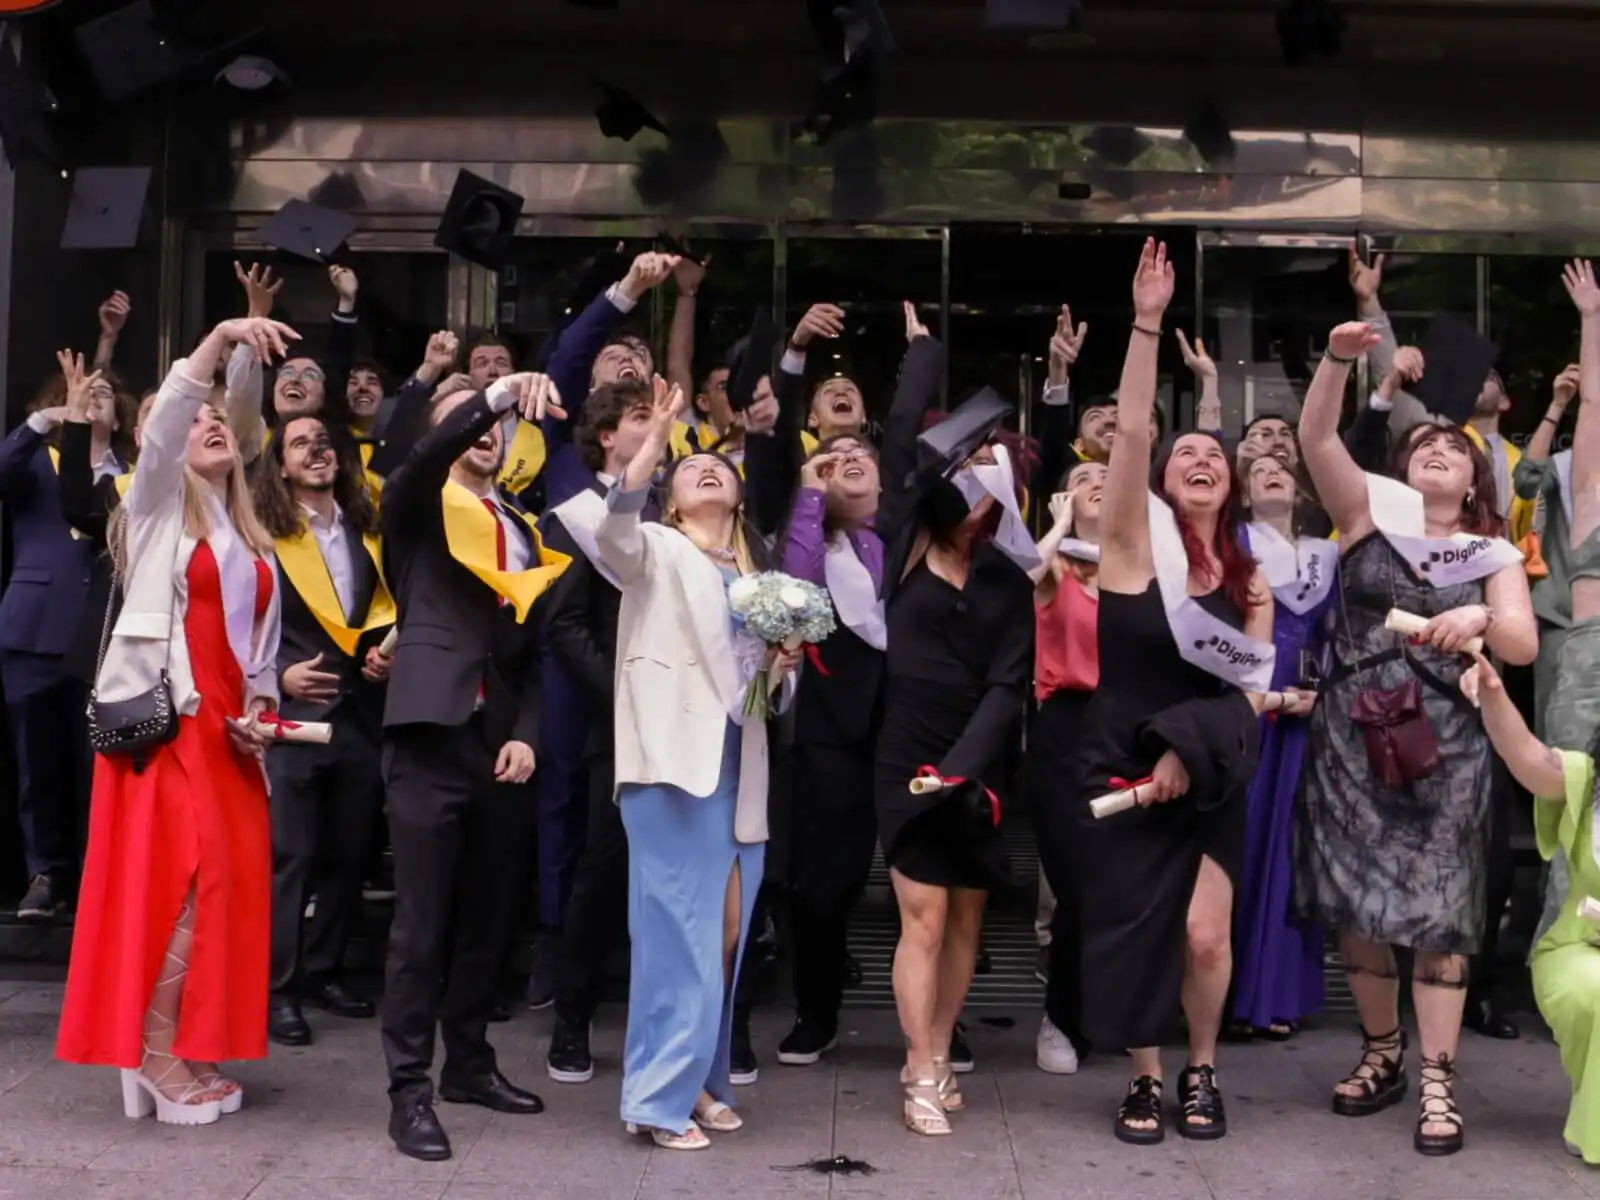 Los graduados de DigiPen Europe-Bilbao, vestidos con togas y birretes, lanzan alegremente sus birretes al aire mientras están de pie afuera de un edificio